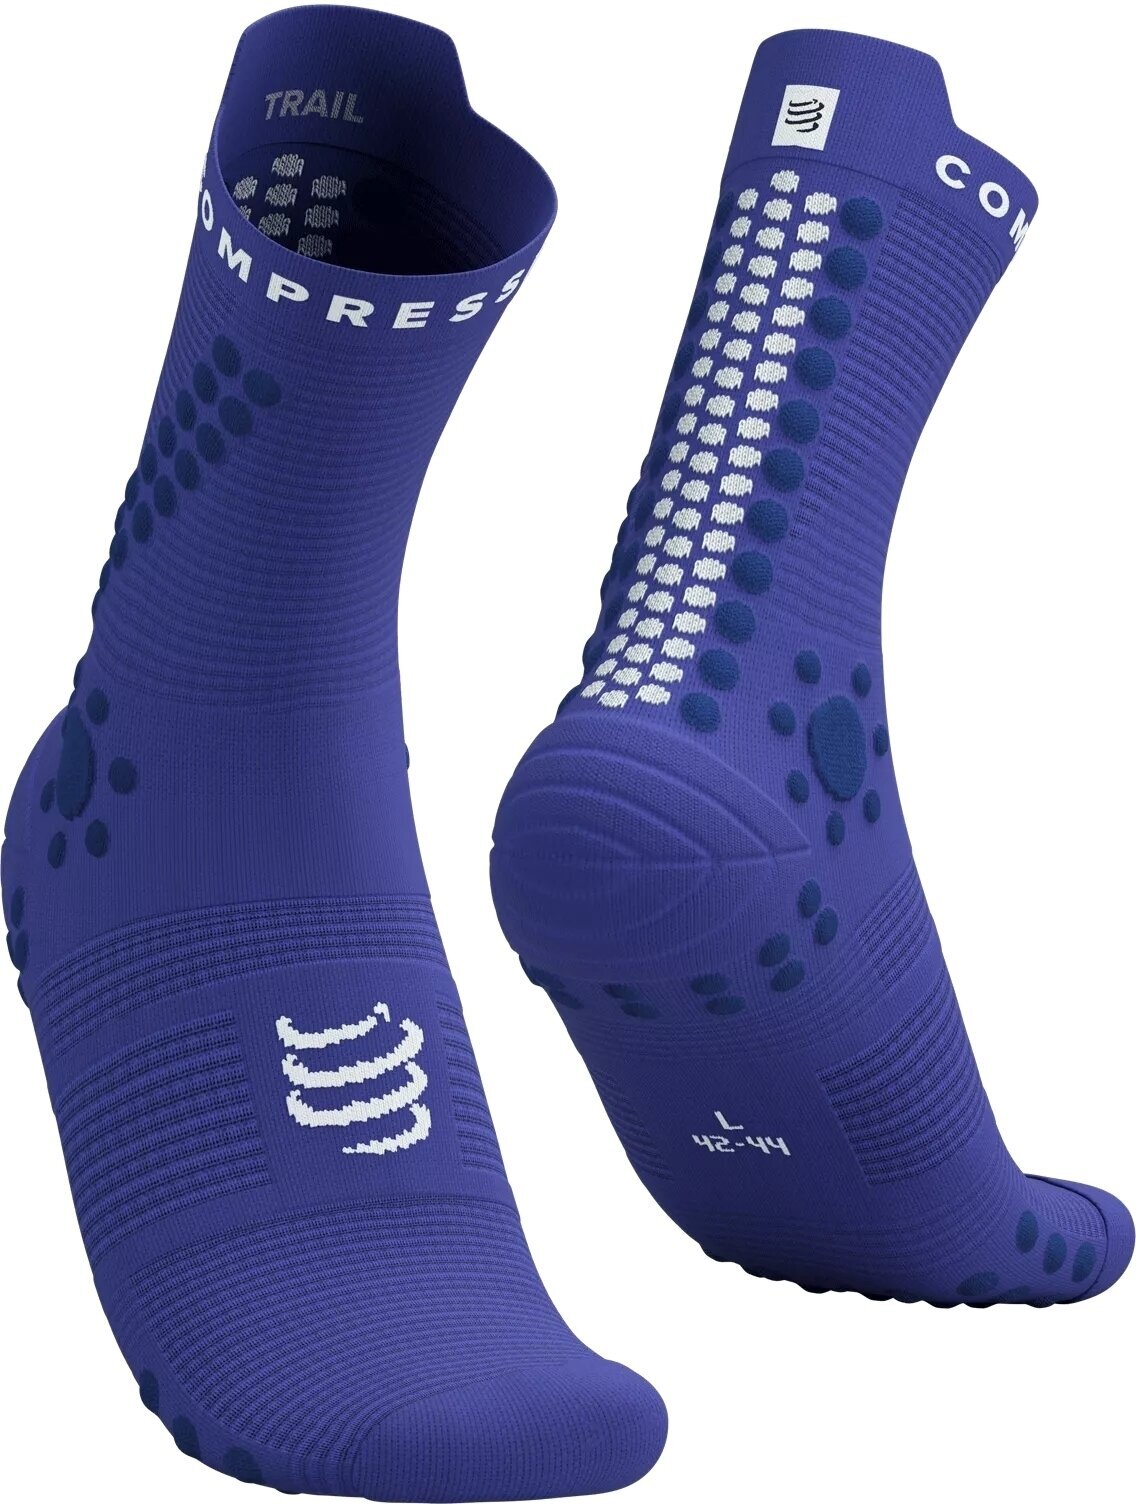 Løbestrømper Compressport Pro Racing Socks V4.0 Trail Dazzling Blue/Dress Blues/White T3 Løbestrømper